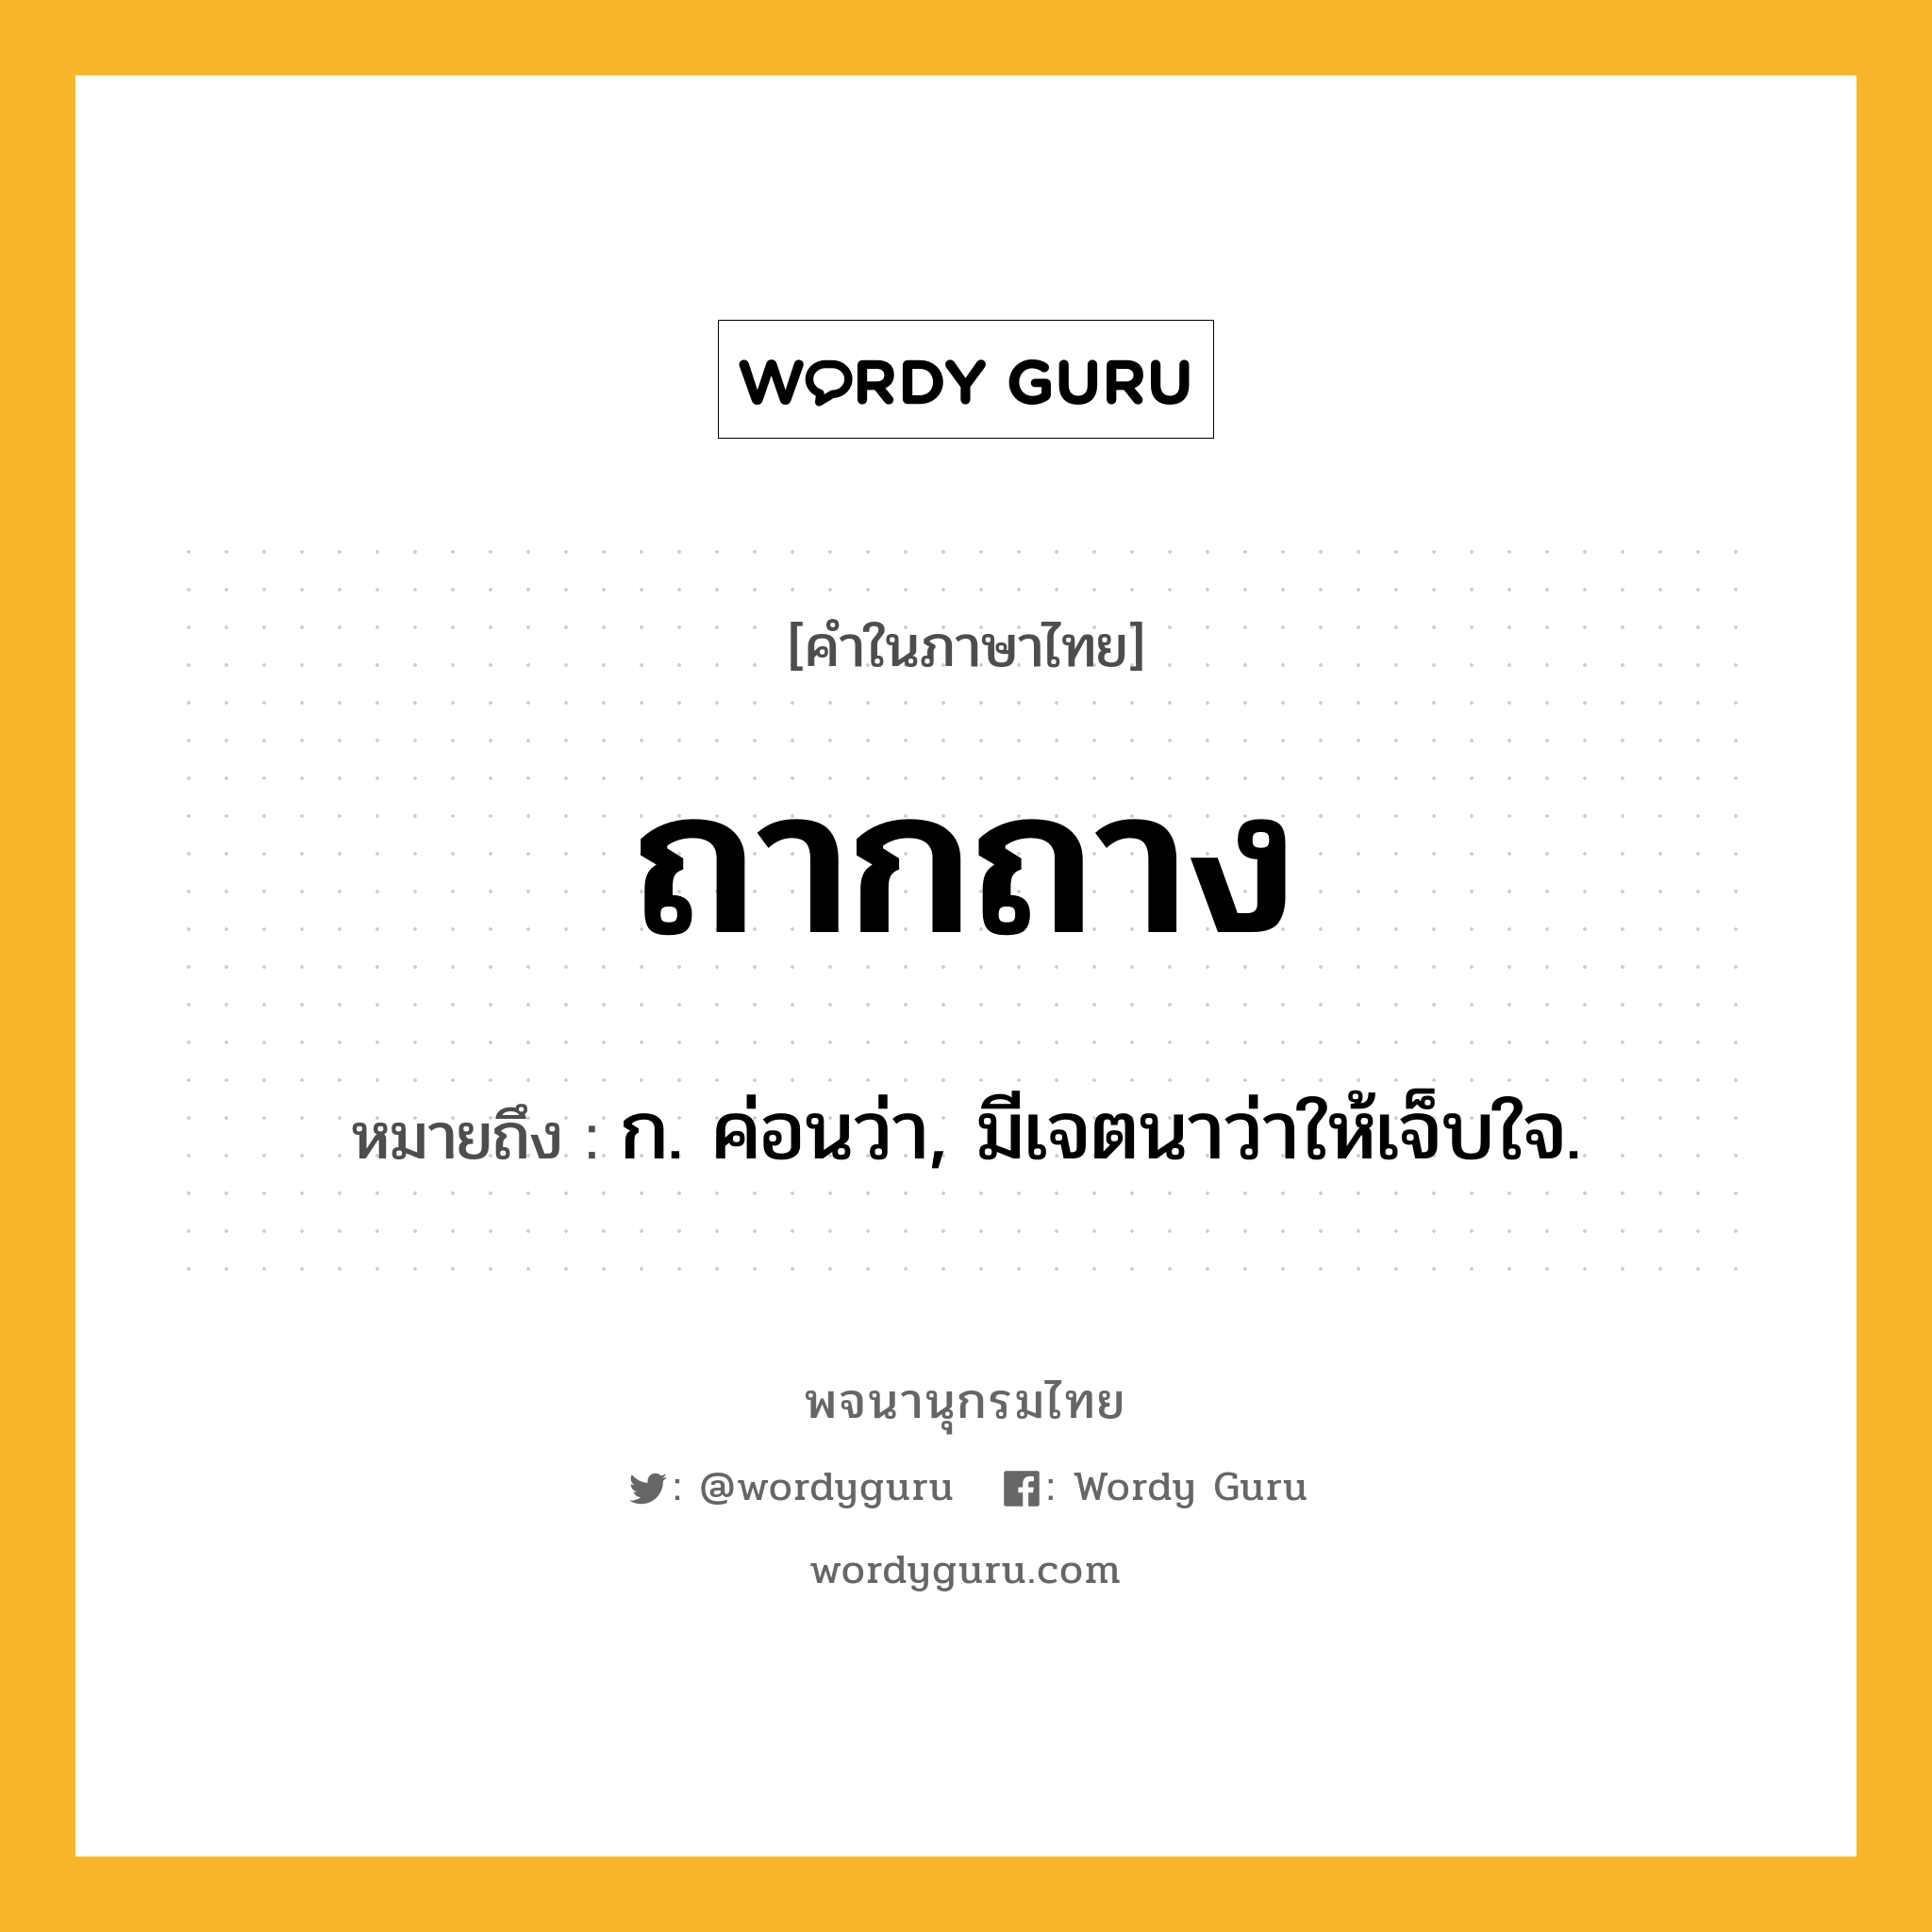 ถากถาง ความหมาย หมายถึงอะไร?, คำในภาษาไทย ถากถาง หมายถึง ก. ค่อนว่า, มีเจตนาว่าให้เจ็บใจ.